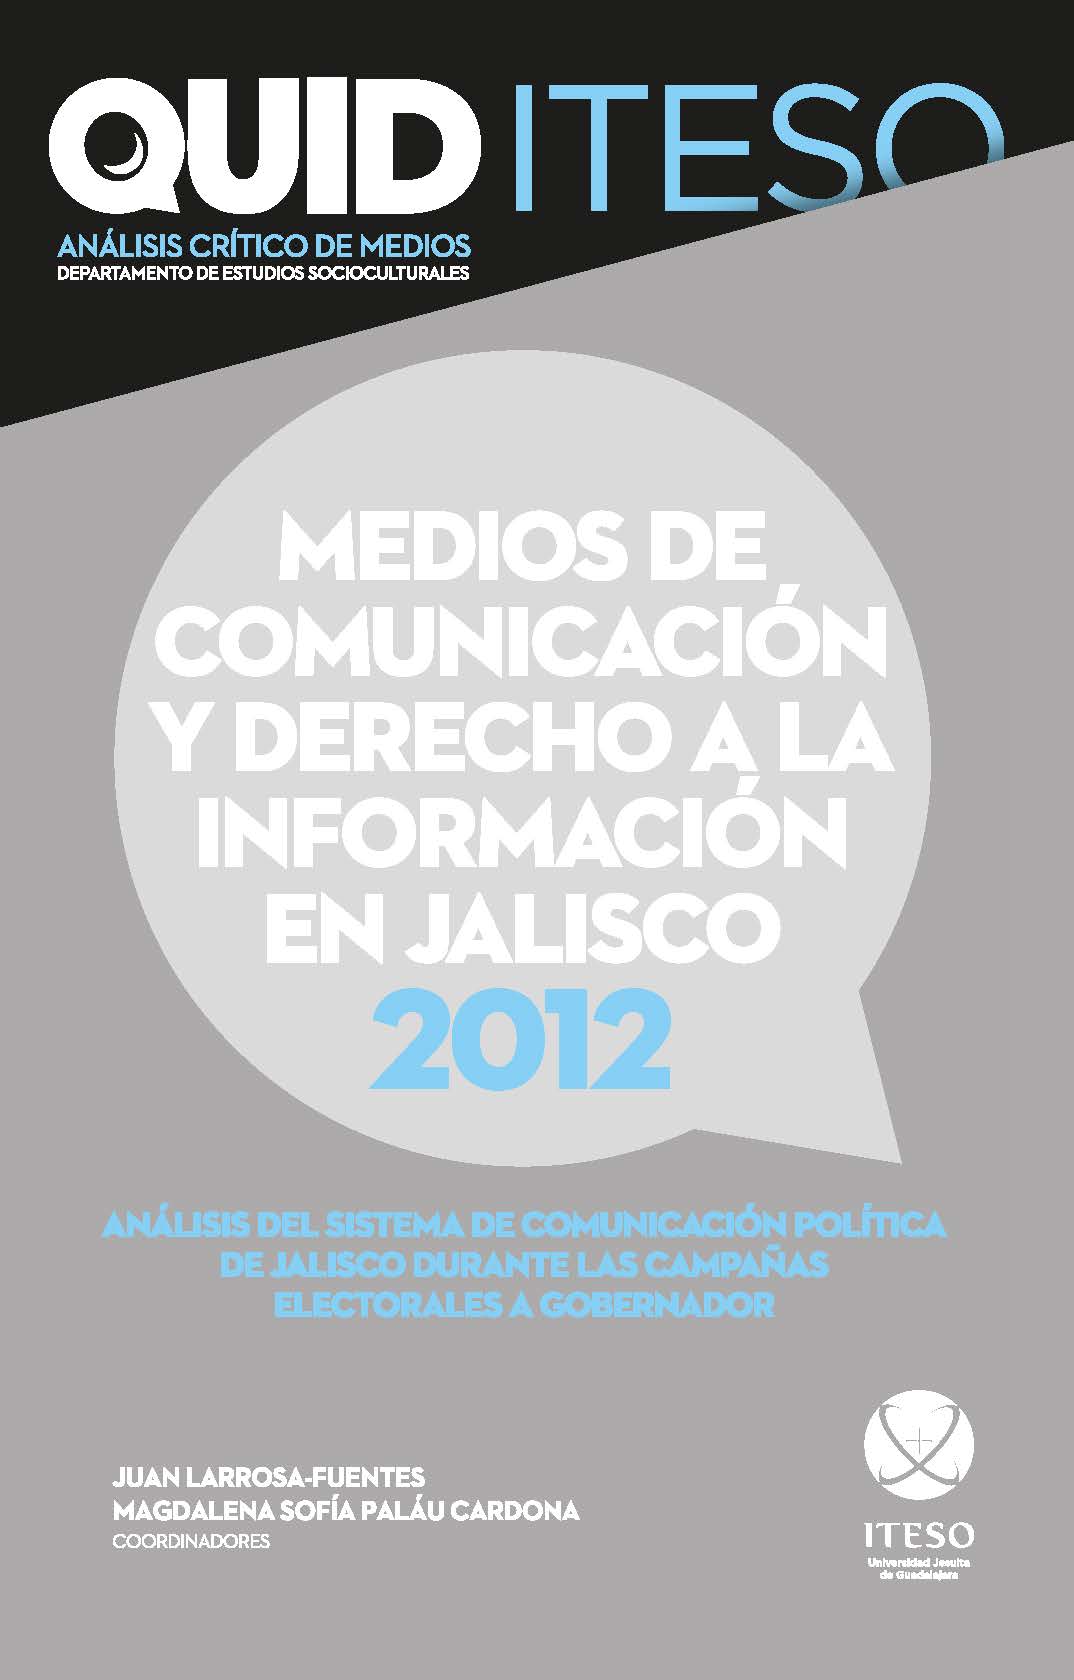 Medios de comunicación y derecho a la información en Jalisco, 2012